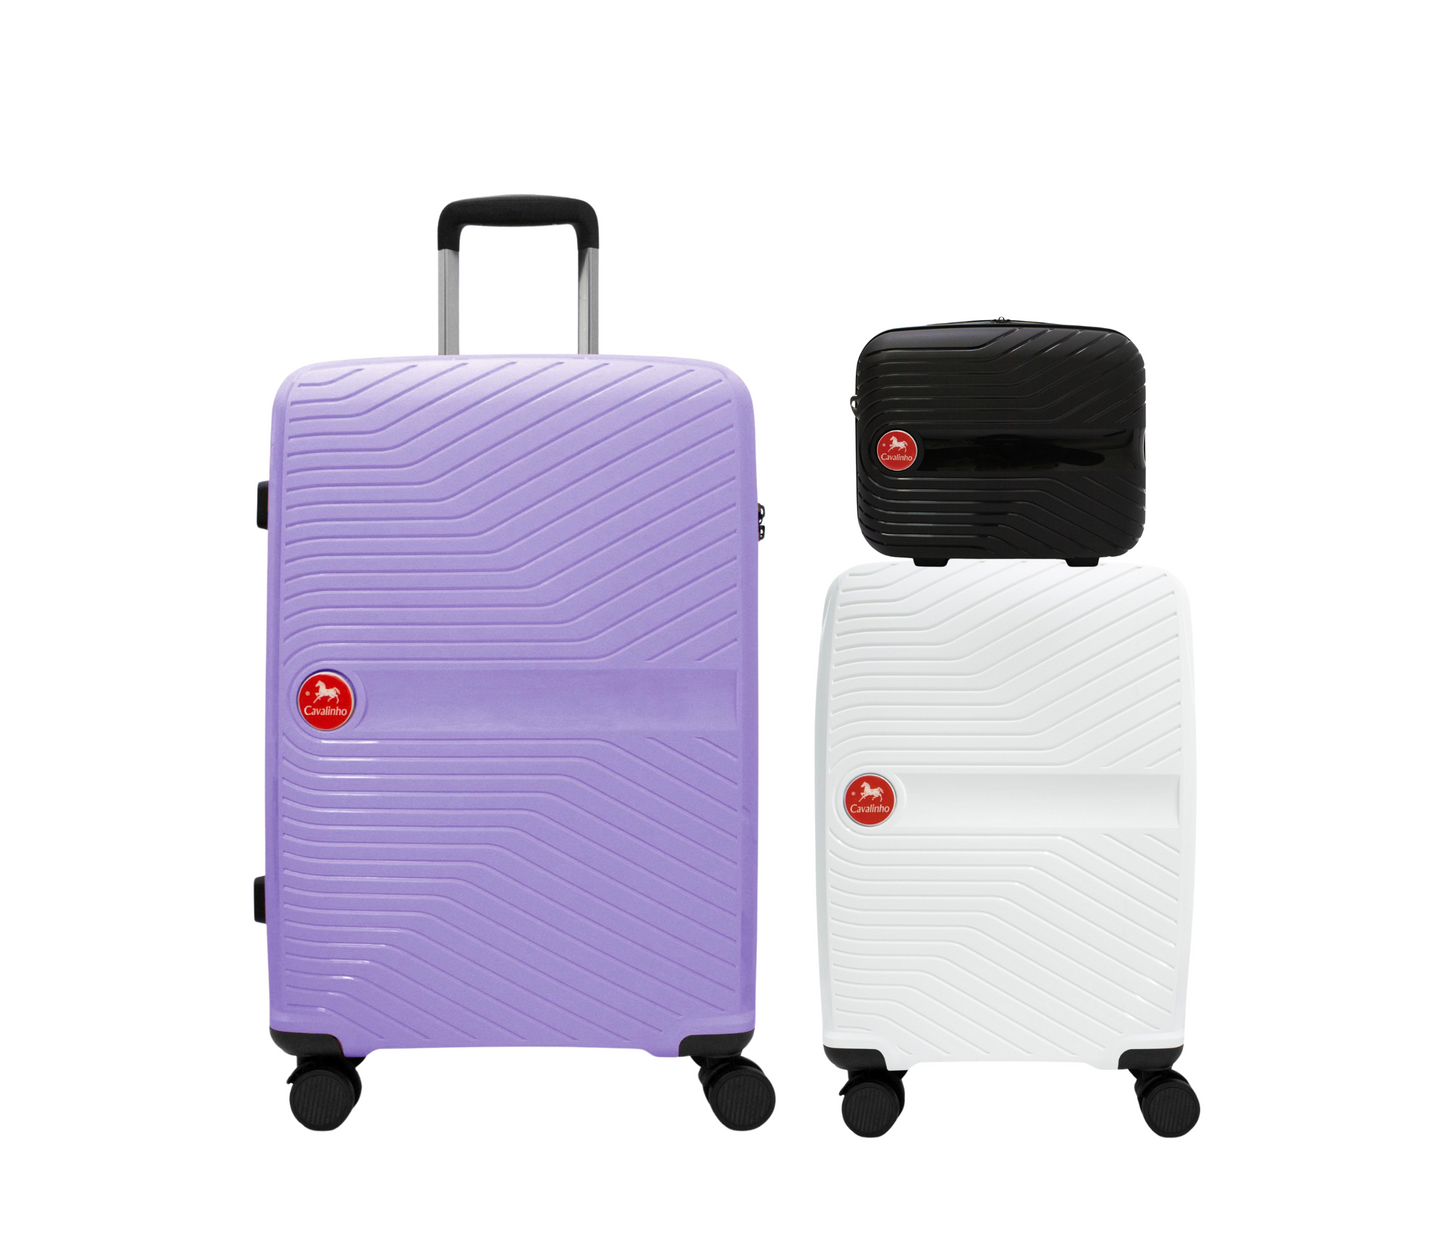 Cavalinho Canada & USA Colorful 3 Piece Luggage Set (15", 19" & 28") - Black White Lilac - 68020004.010639.S151928._1